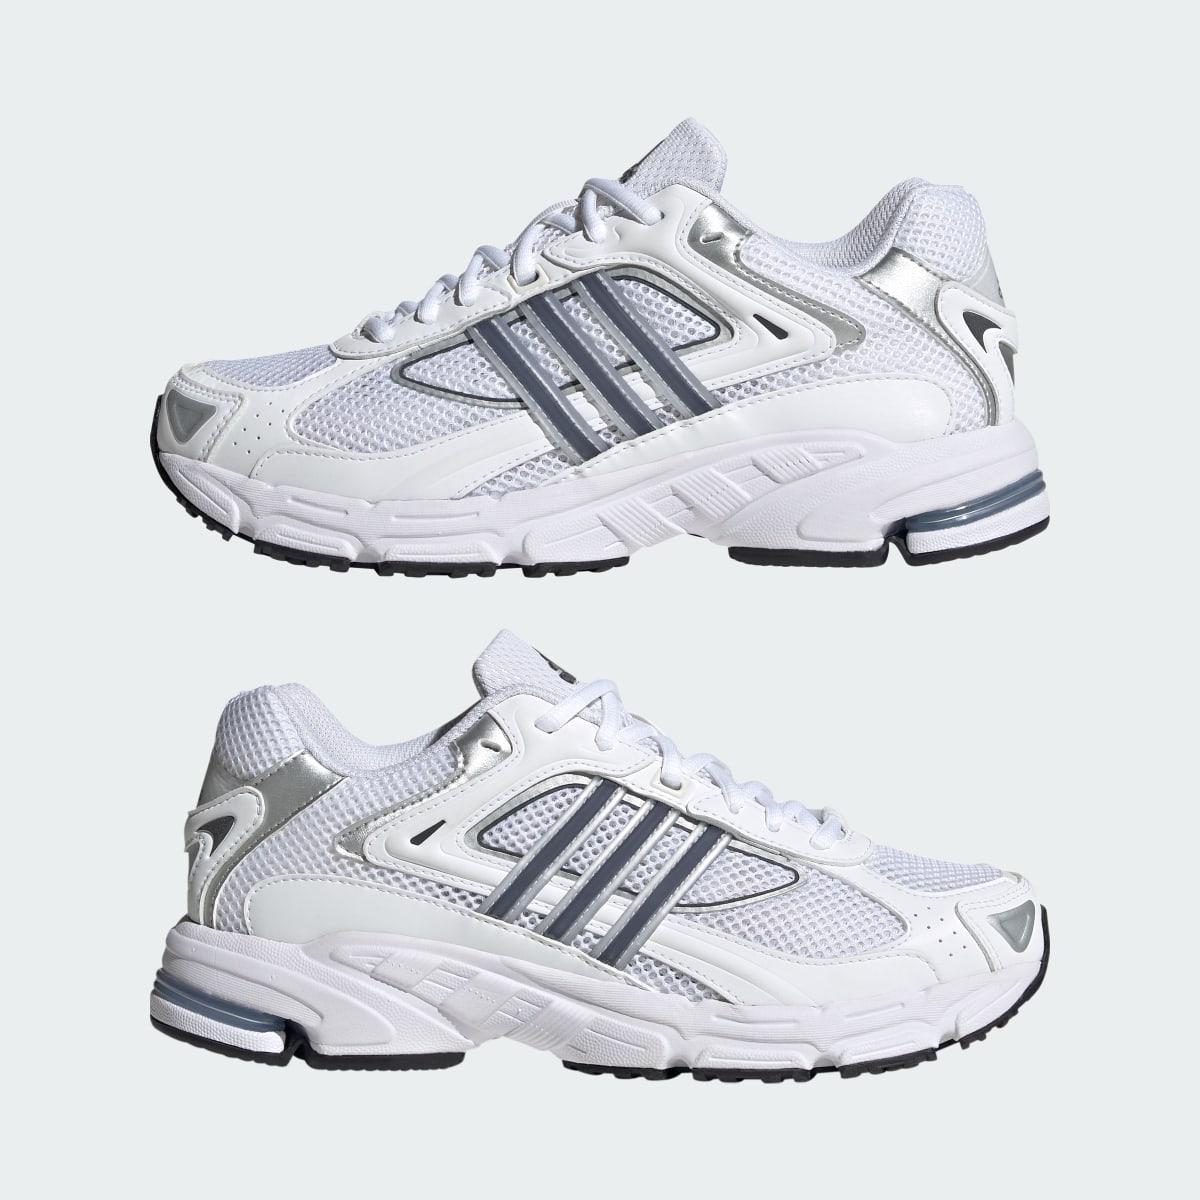 Adidas Response CL Schuh. 11